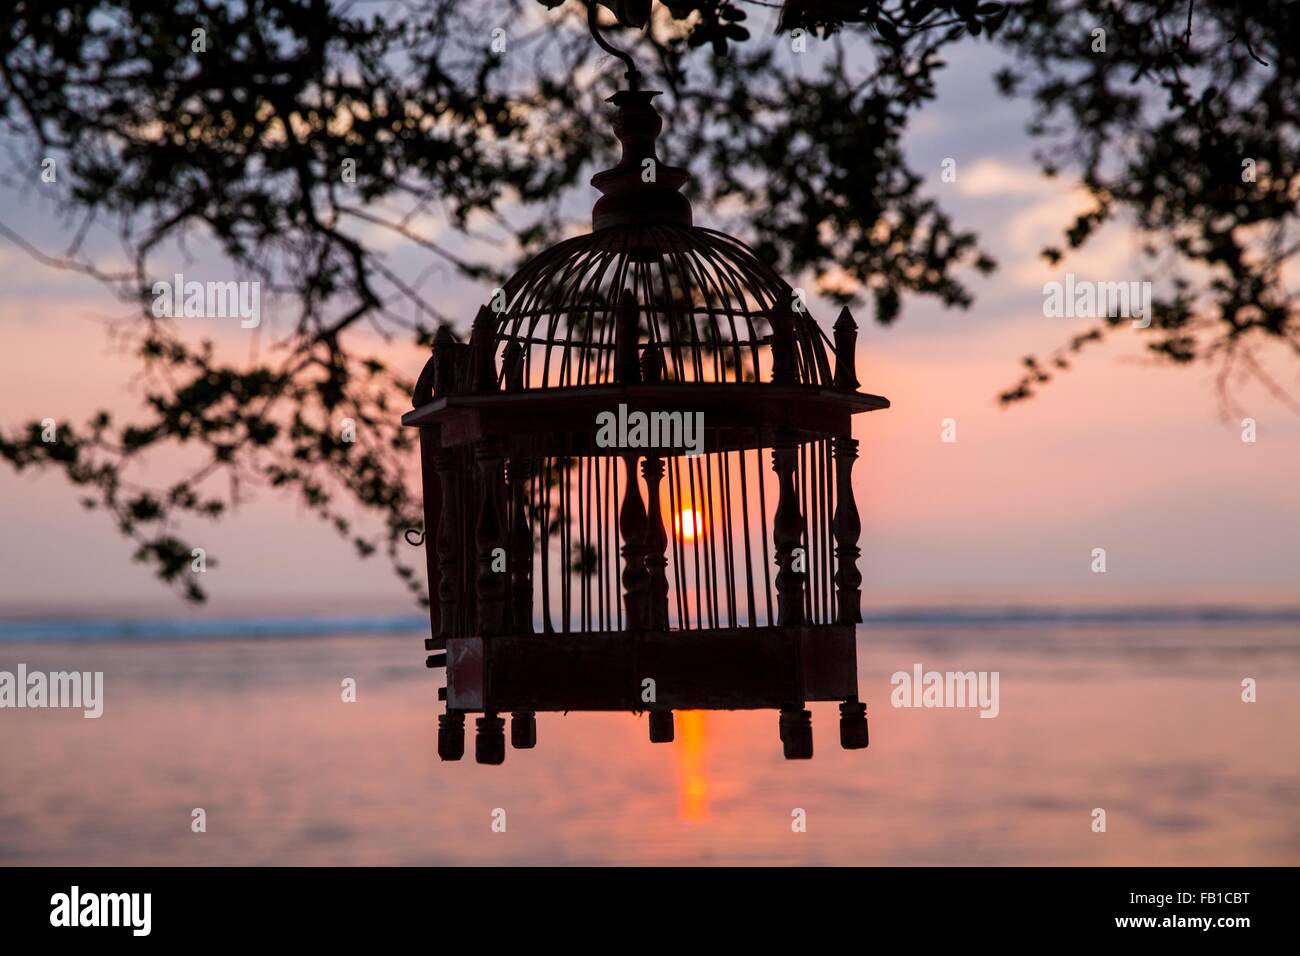 La silhouette de la cage vide au coucher du soleil, Gili Trawangan, Lombok, Indonésie Banque D'Images